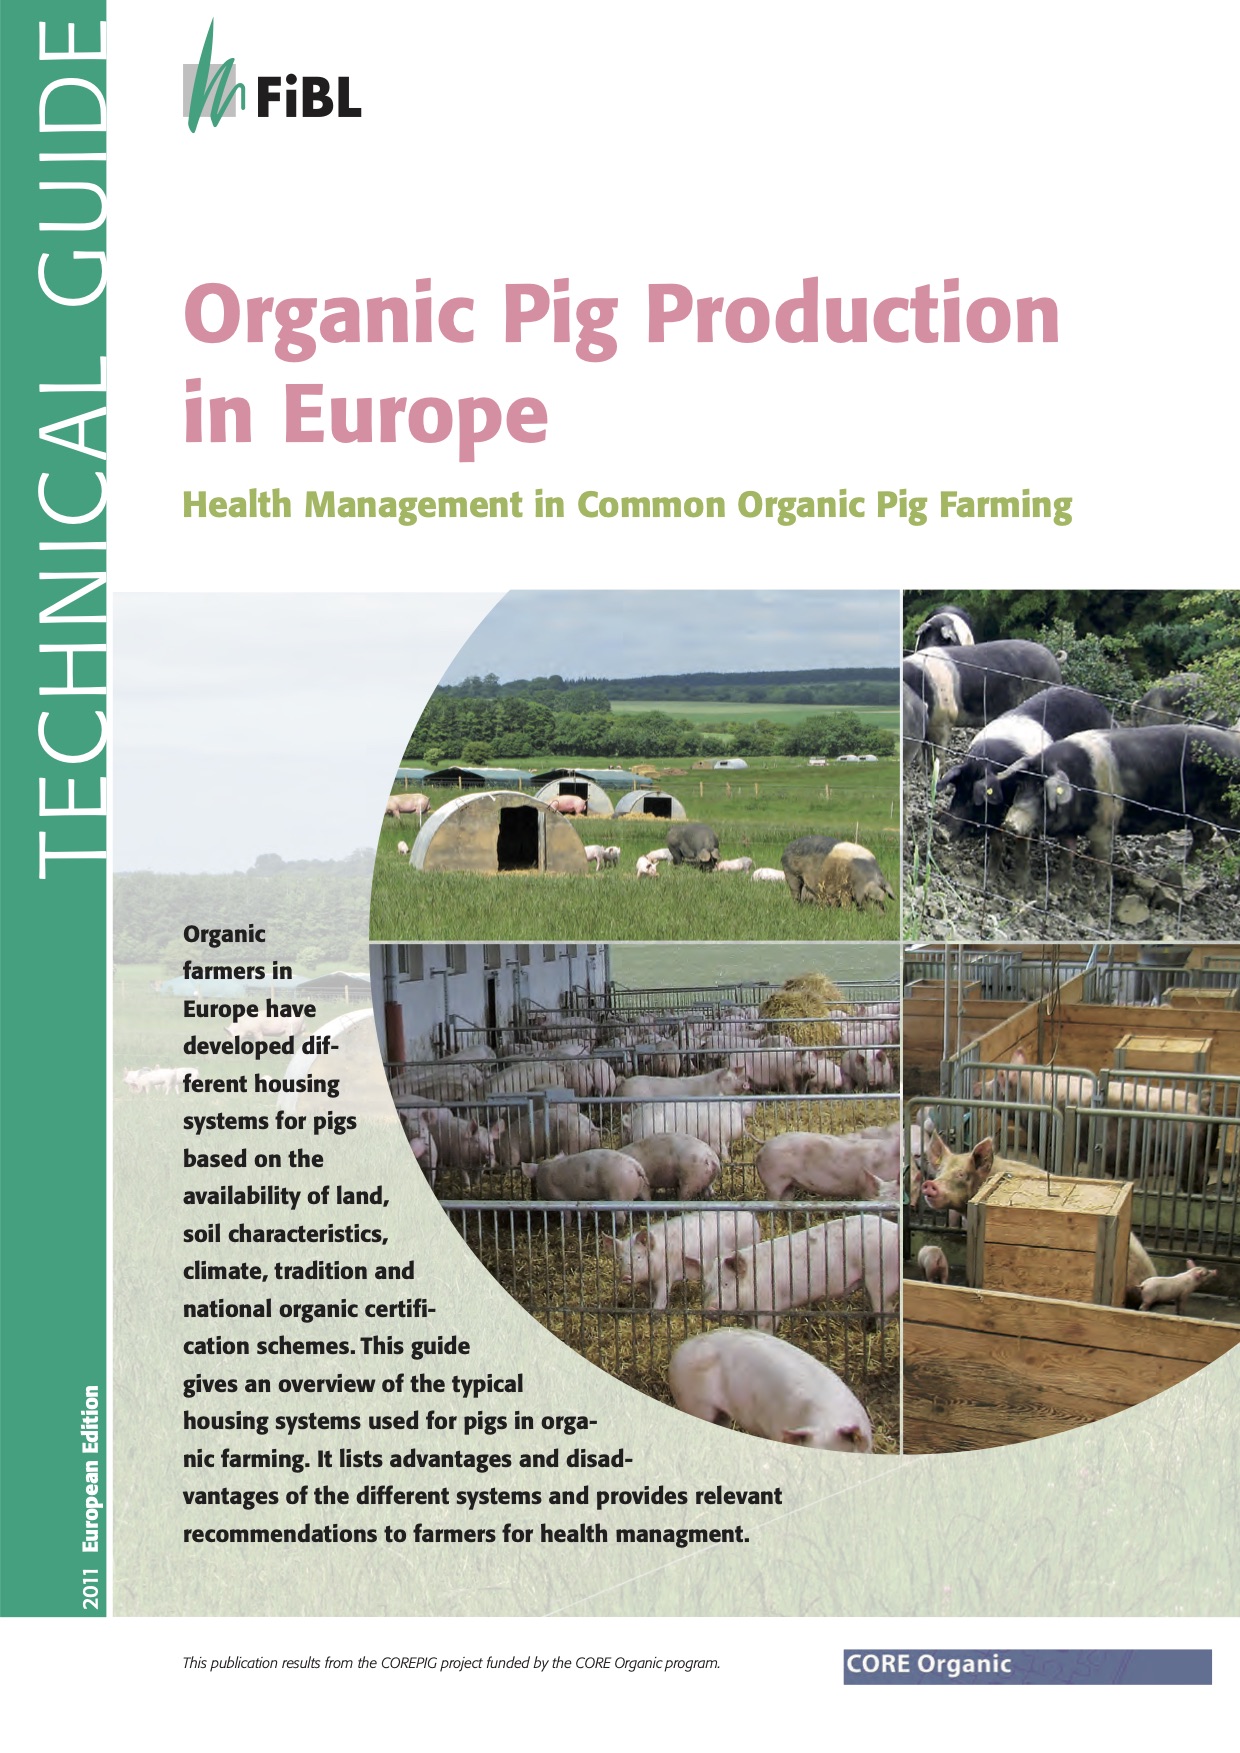 Mahepõllumajanduslik seakasvatus Euroopas: tervishoiukorraldus ühises mahepõllumajanduslikus seakasvatuses